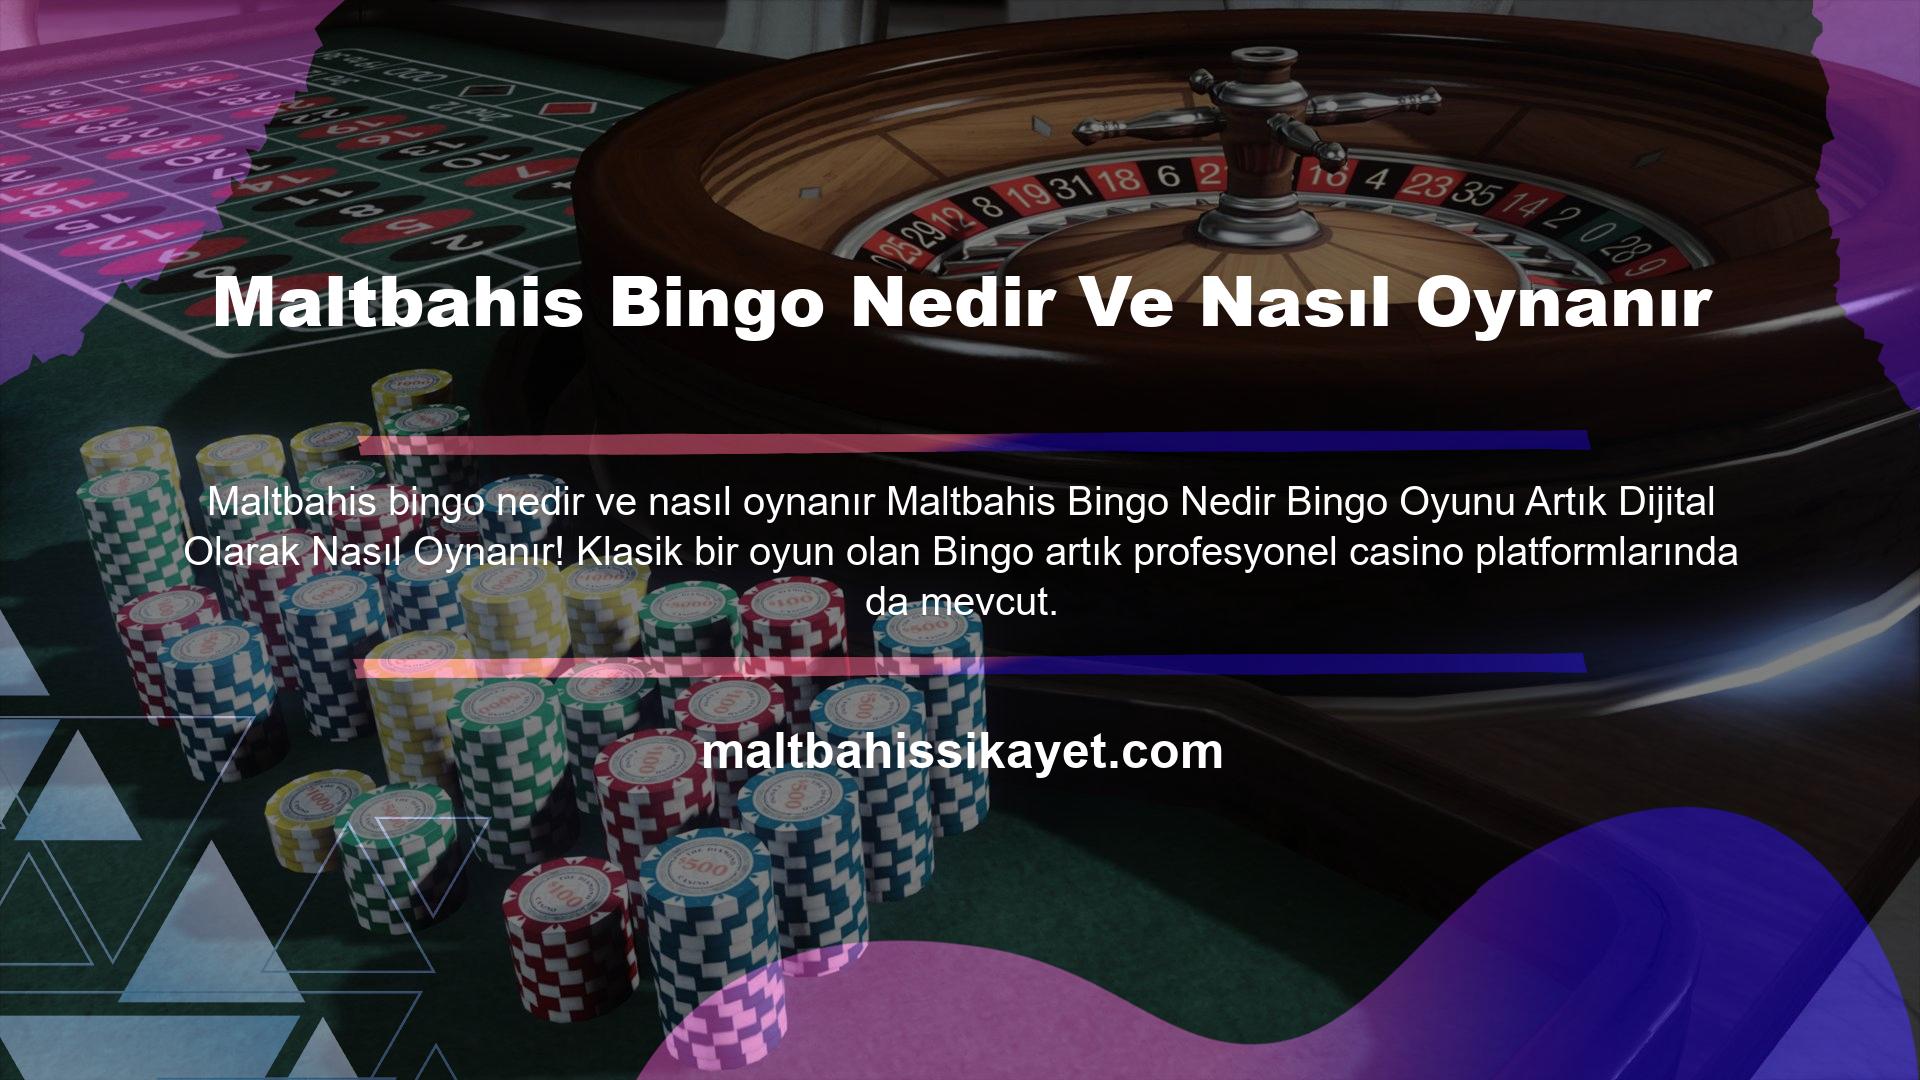 Maltbahis Bingo bu ekolün ana temsilcilerinden biridir ve sizlere gerçek casino heyecanı sunmaktadır